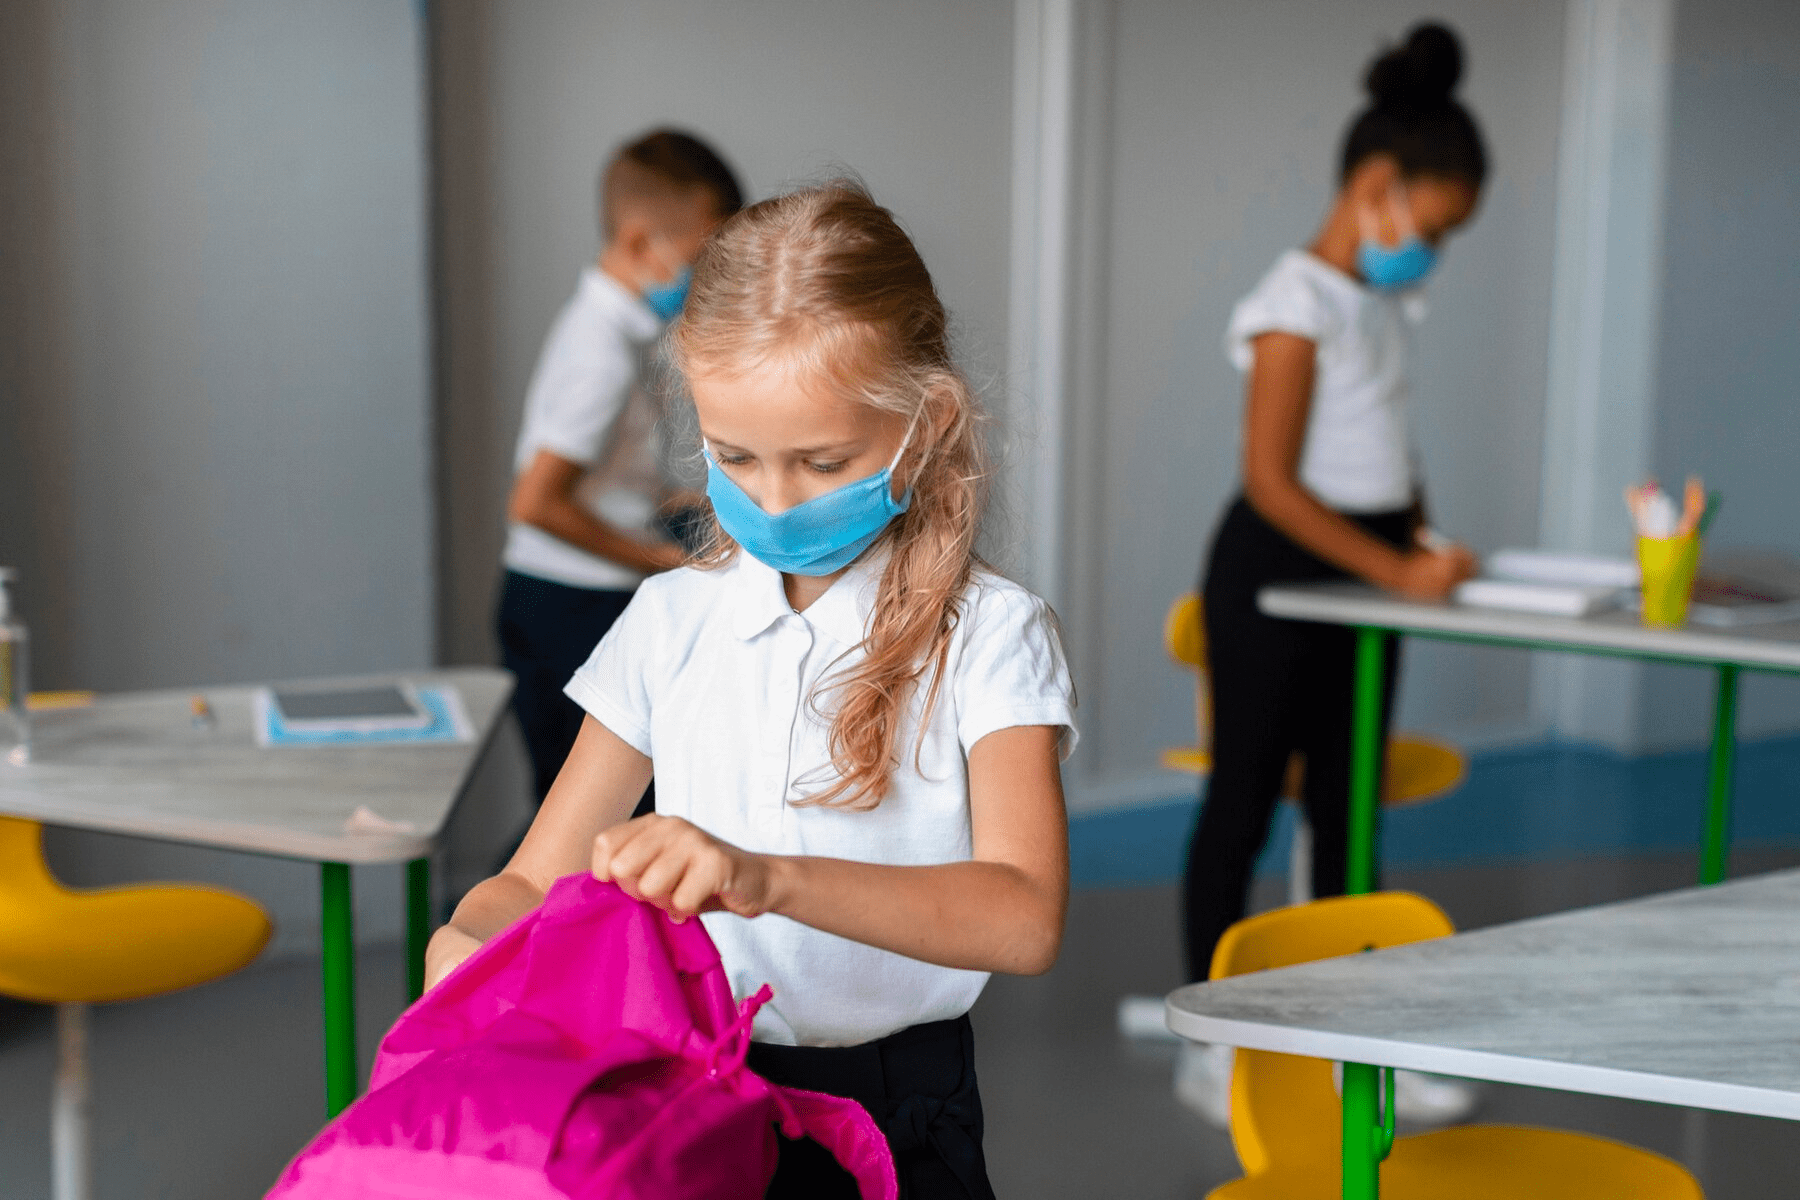 Procedimientos de limpieza y organización del aula